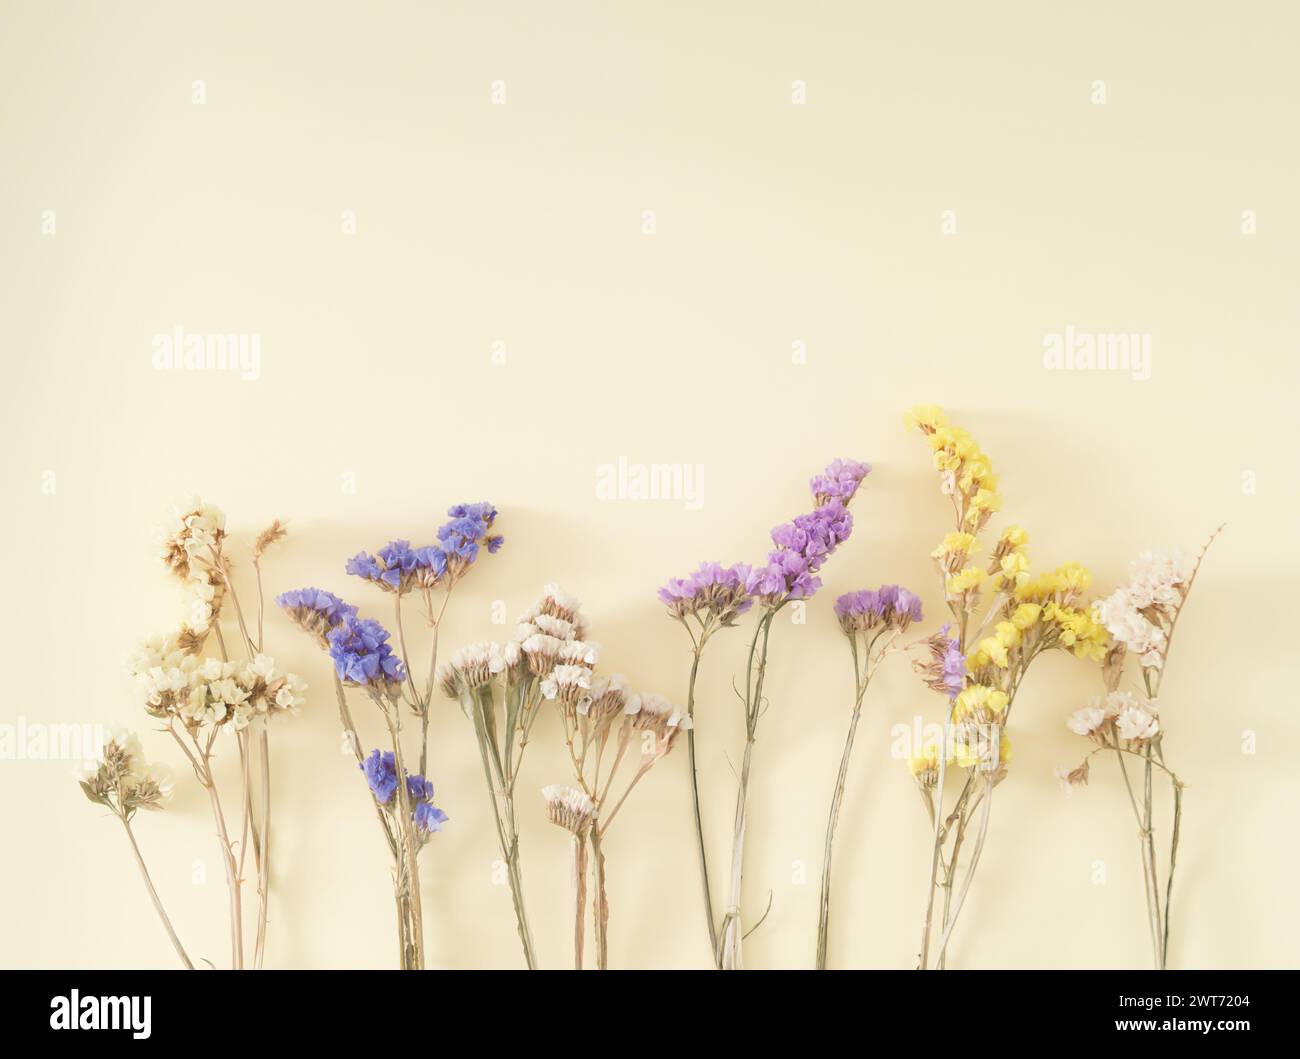 Kreatives Layout aus bunten trockenen Blumen auf pastellfarbenem cremefarbenen Hintergrund. Grußkarte mit Blumenmuster. Minimales Konzept und Einfachheit. Naturdesign. Stockfoto